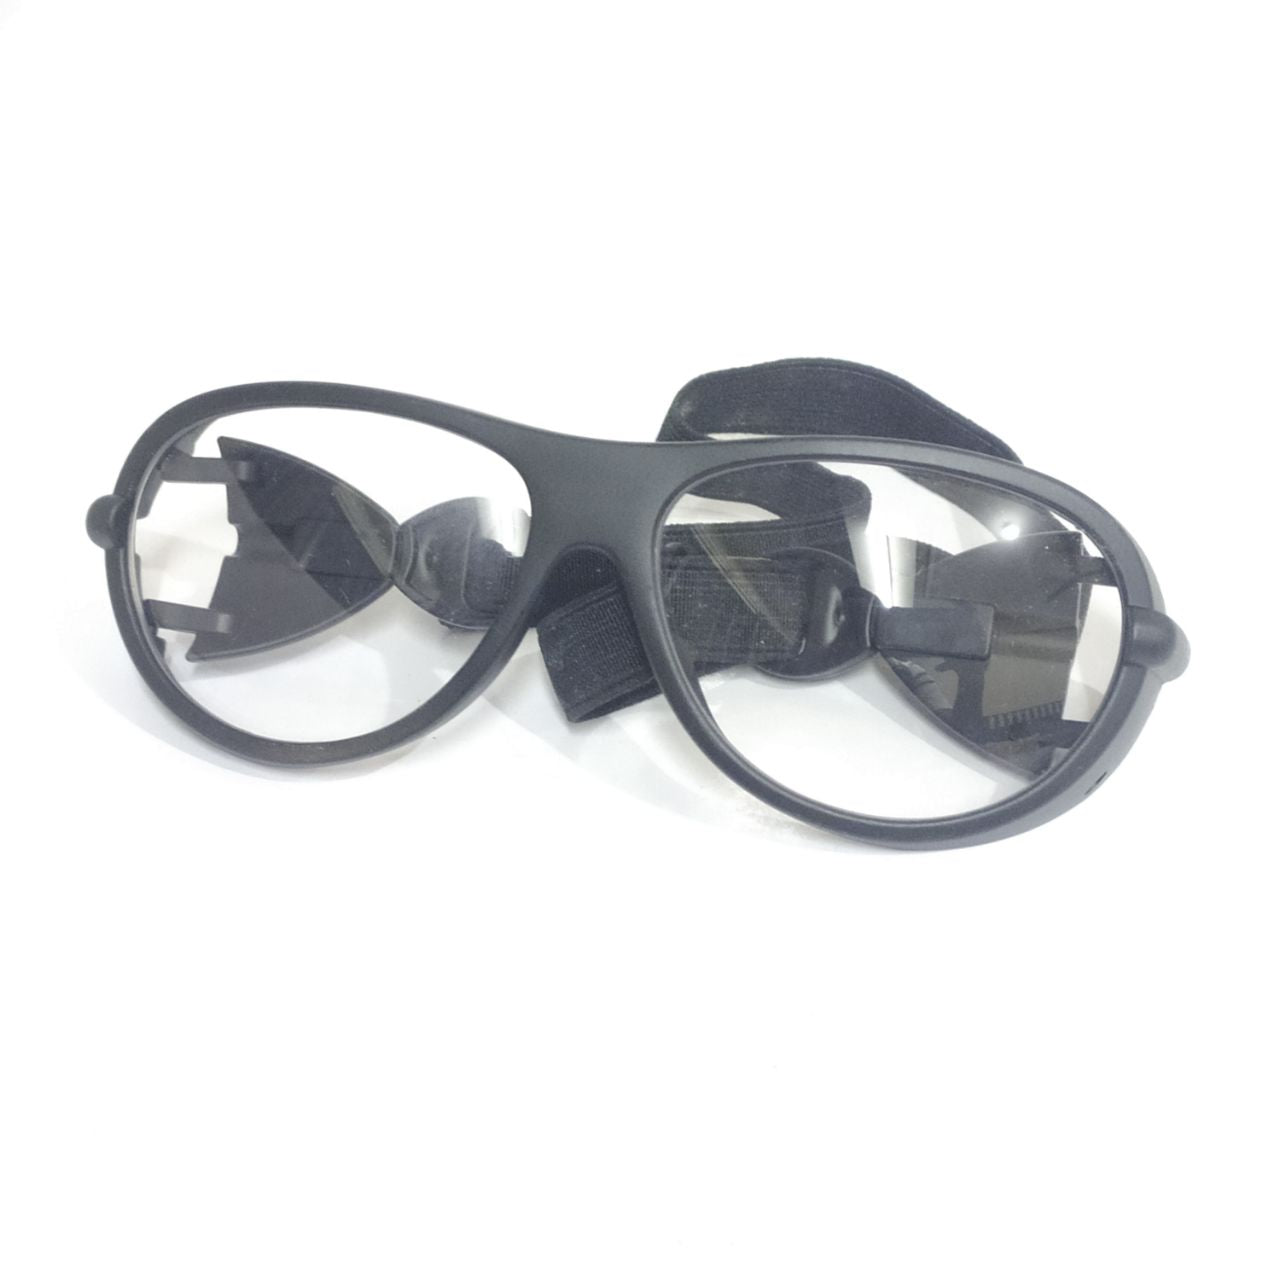 EYESafety Black Frame Prescription Sports Glasses with Strap